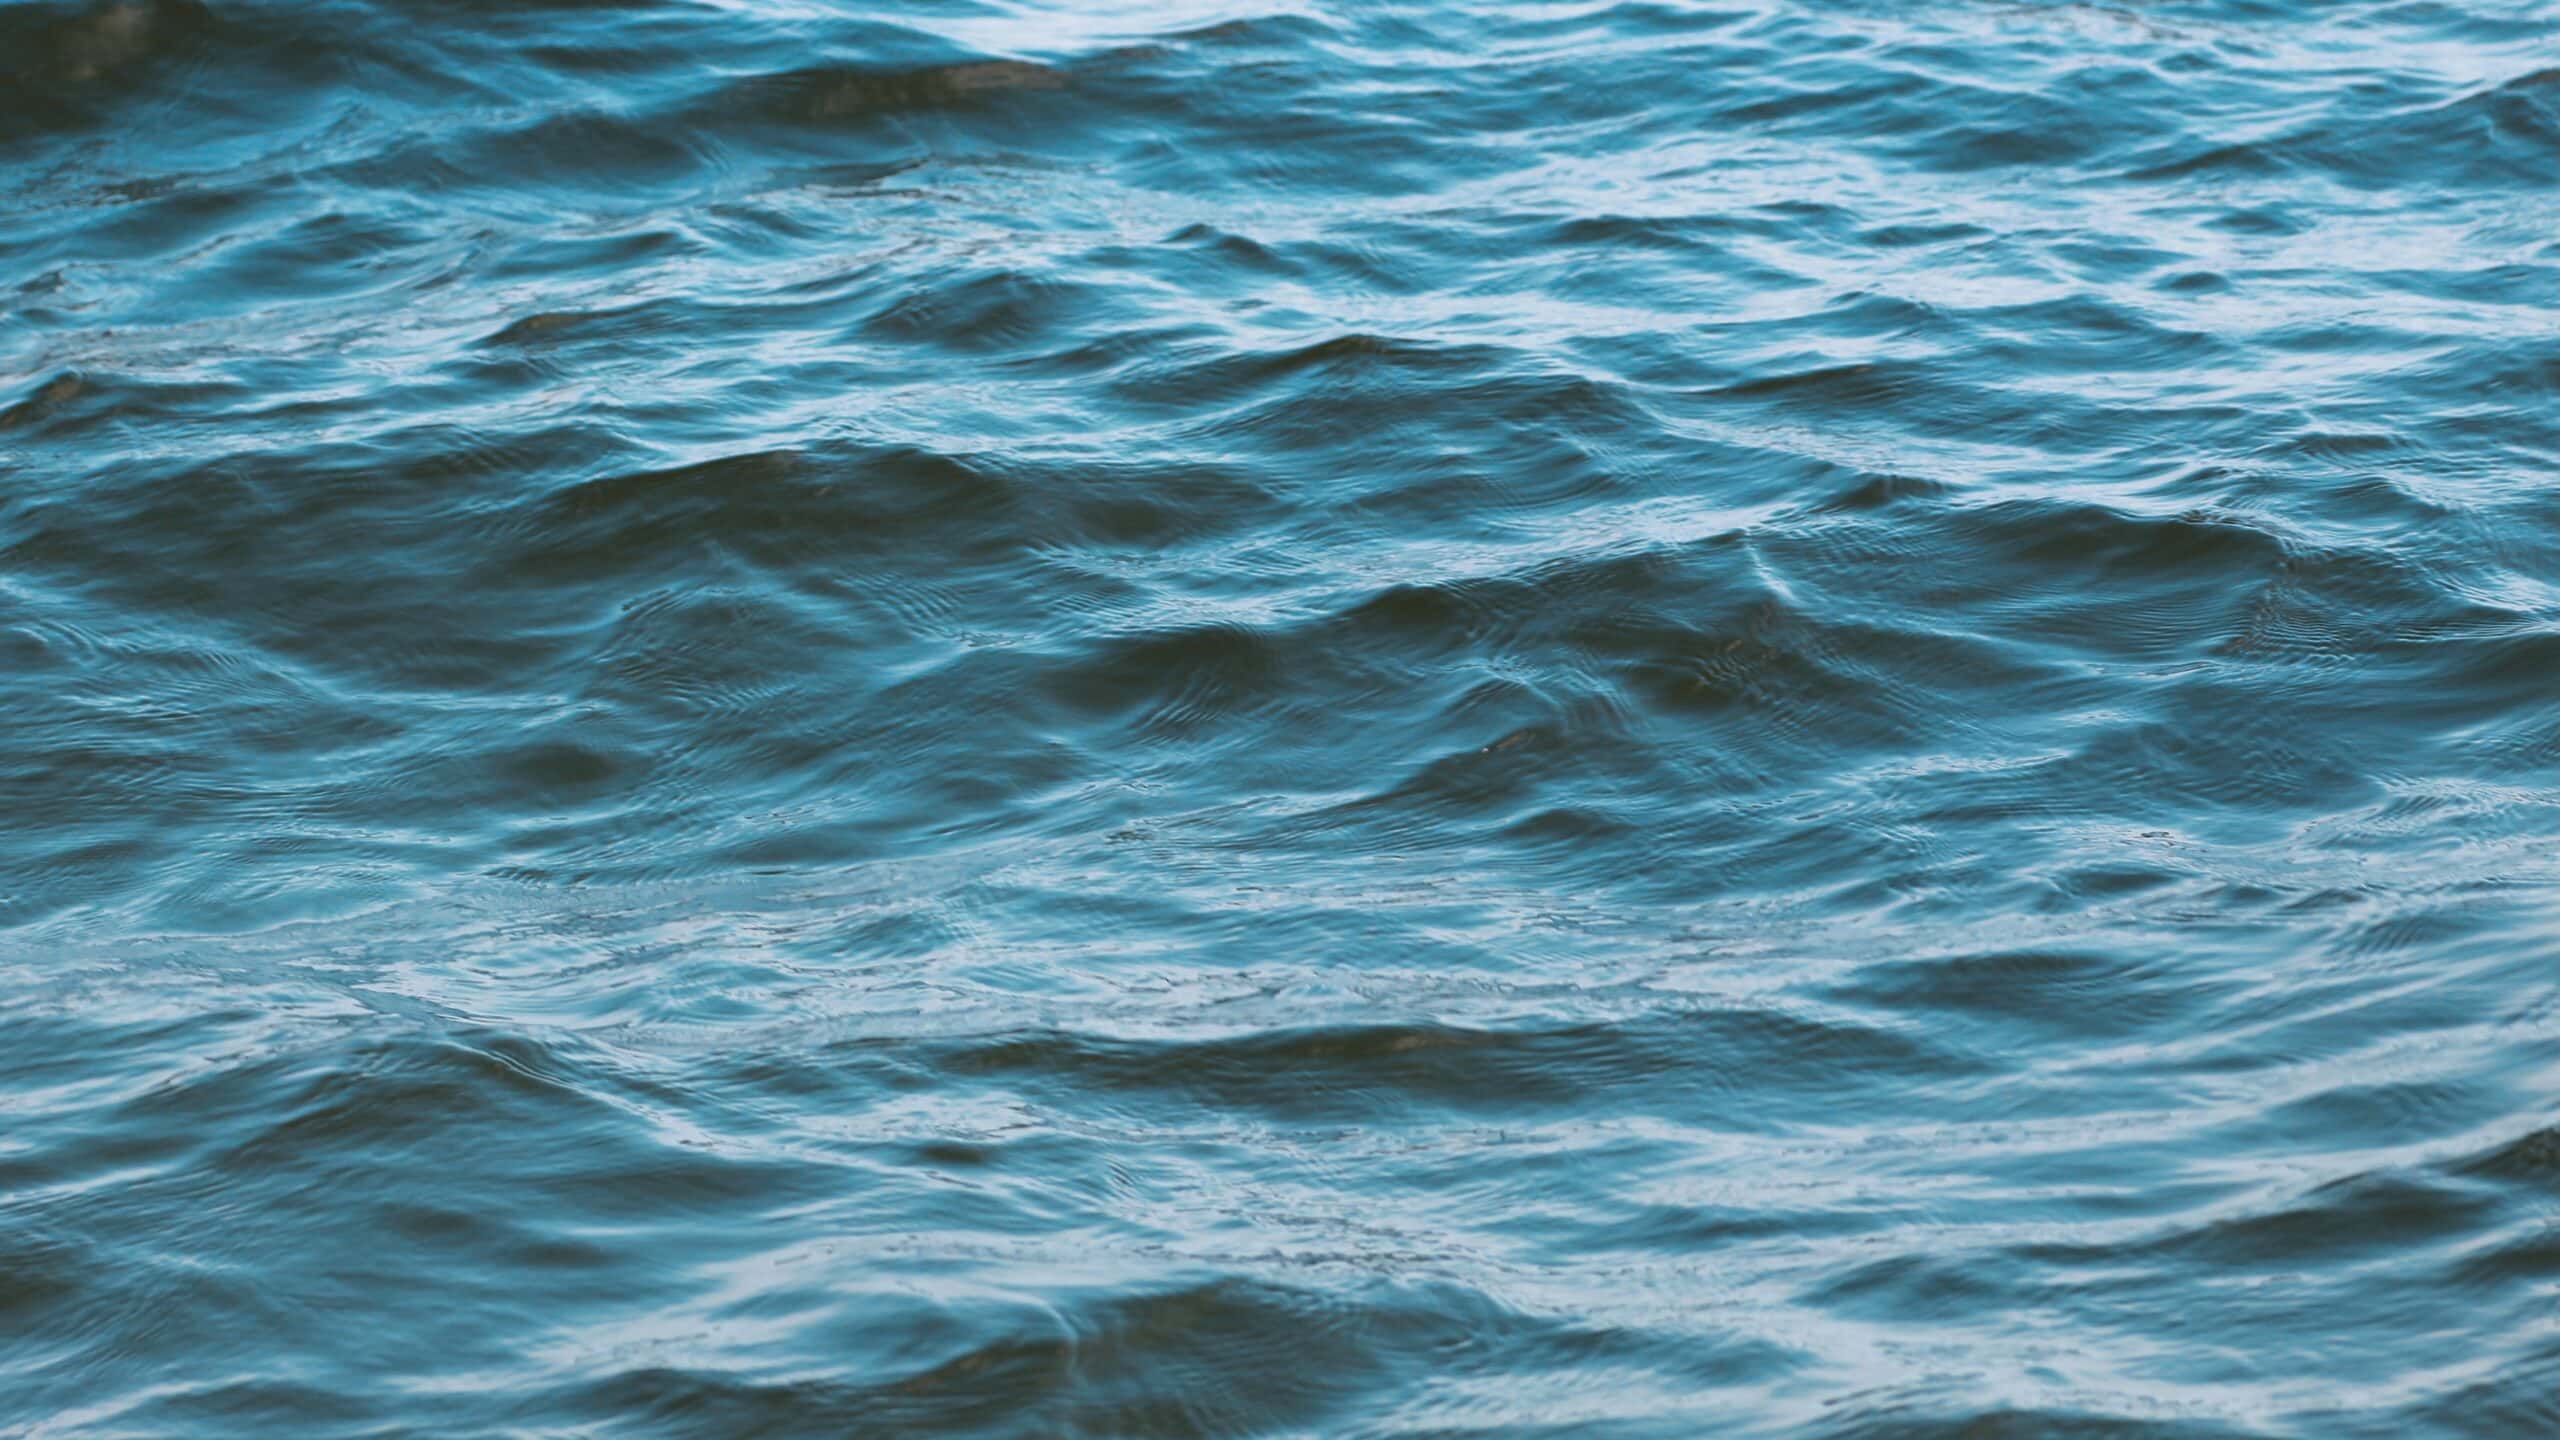 Closeup of dark lake water